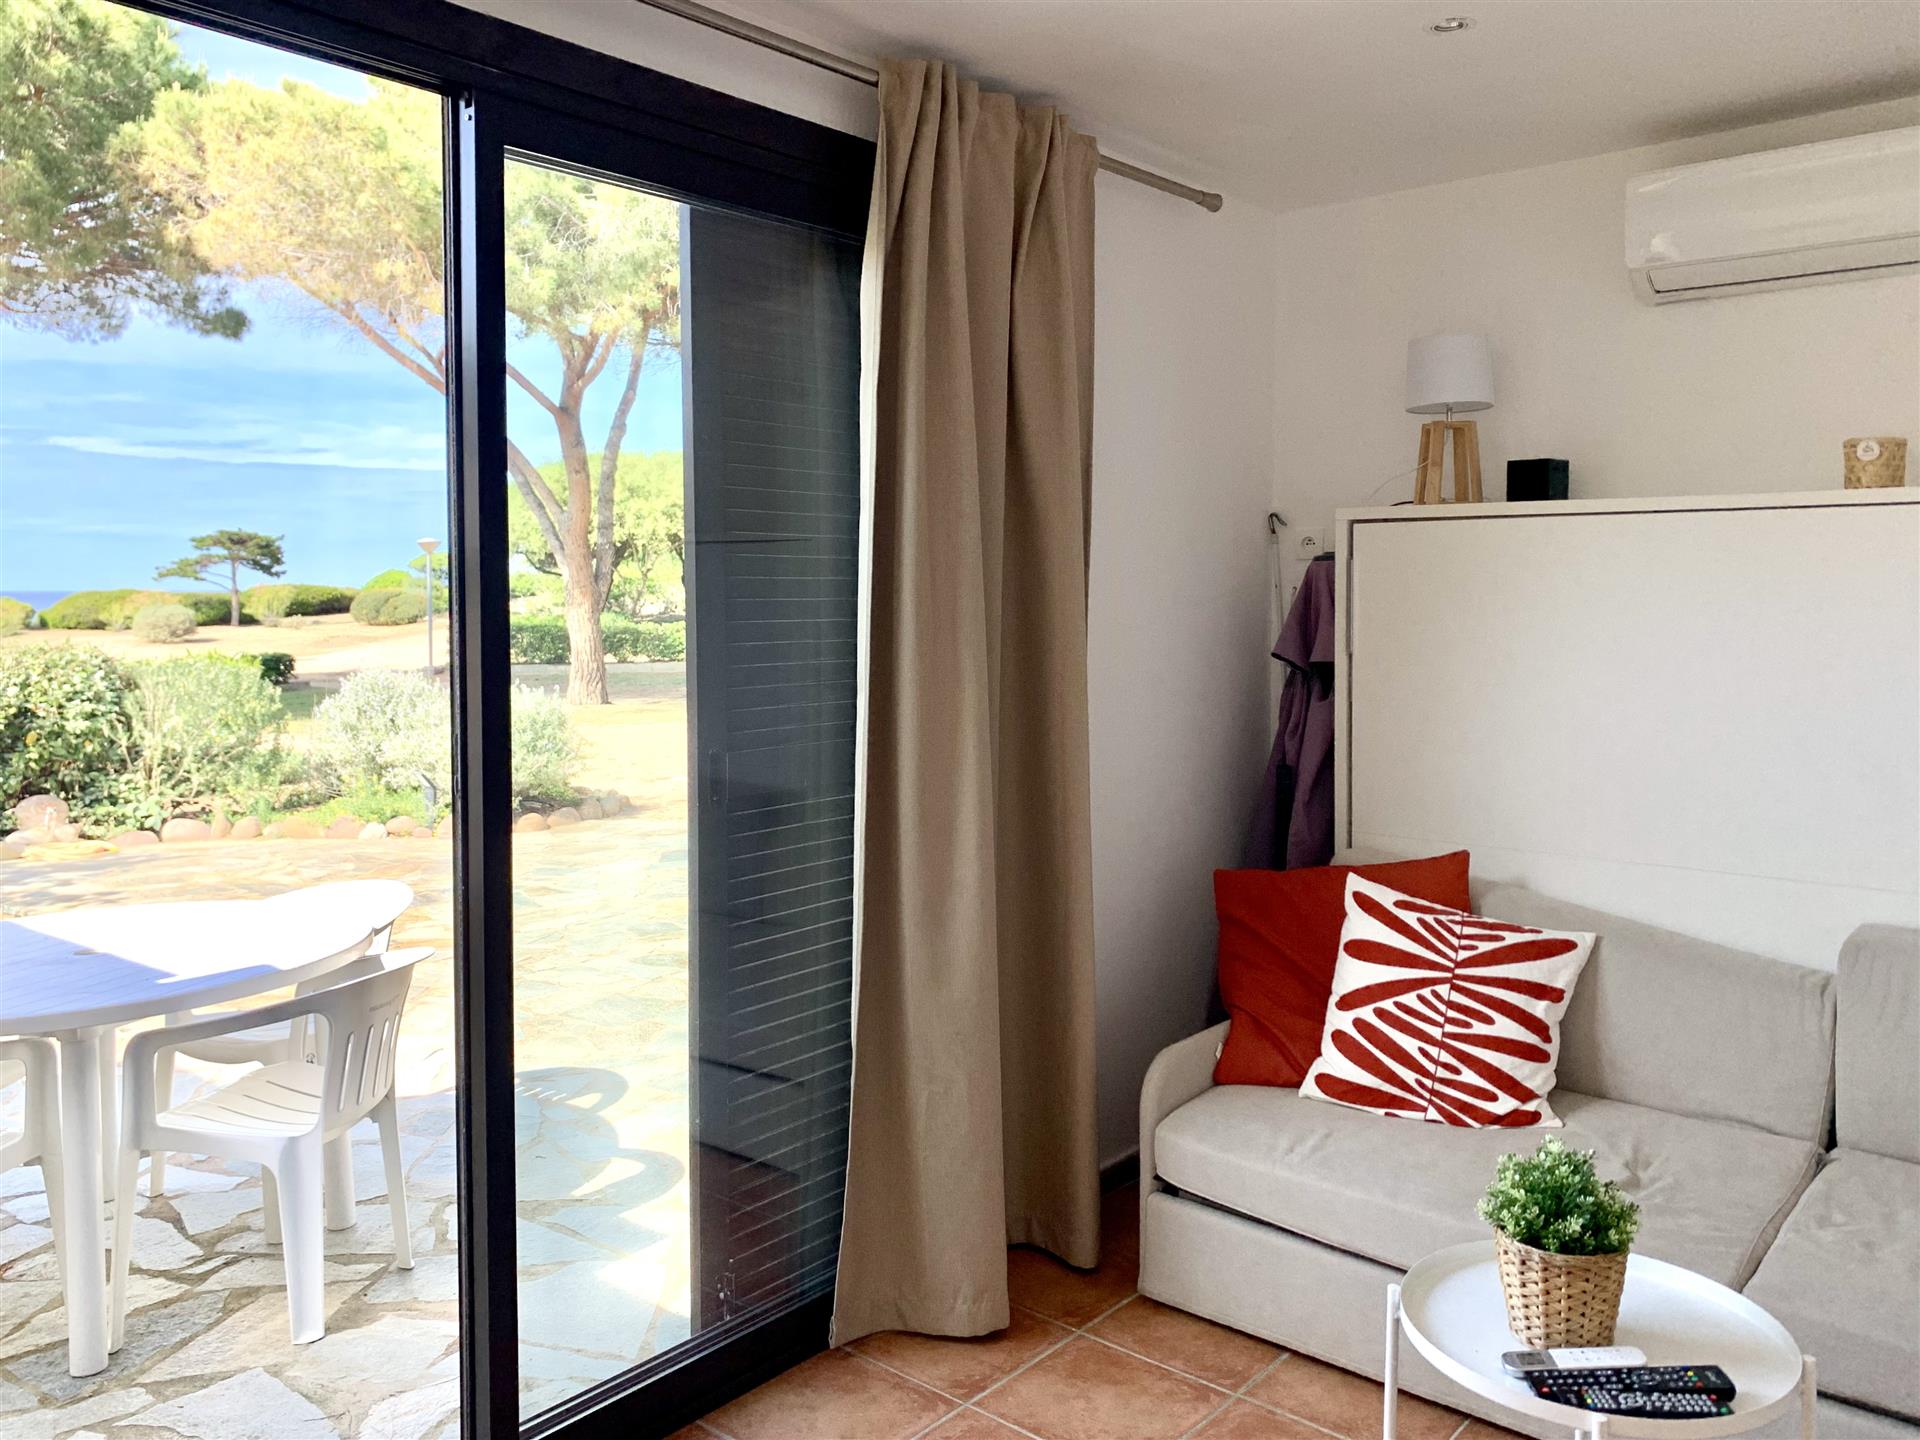 Unico : Moderna casa sulla spiaggia con vista sul mare - 3 camere da letto - Ampia terrazza - Lumio